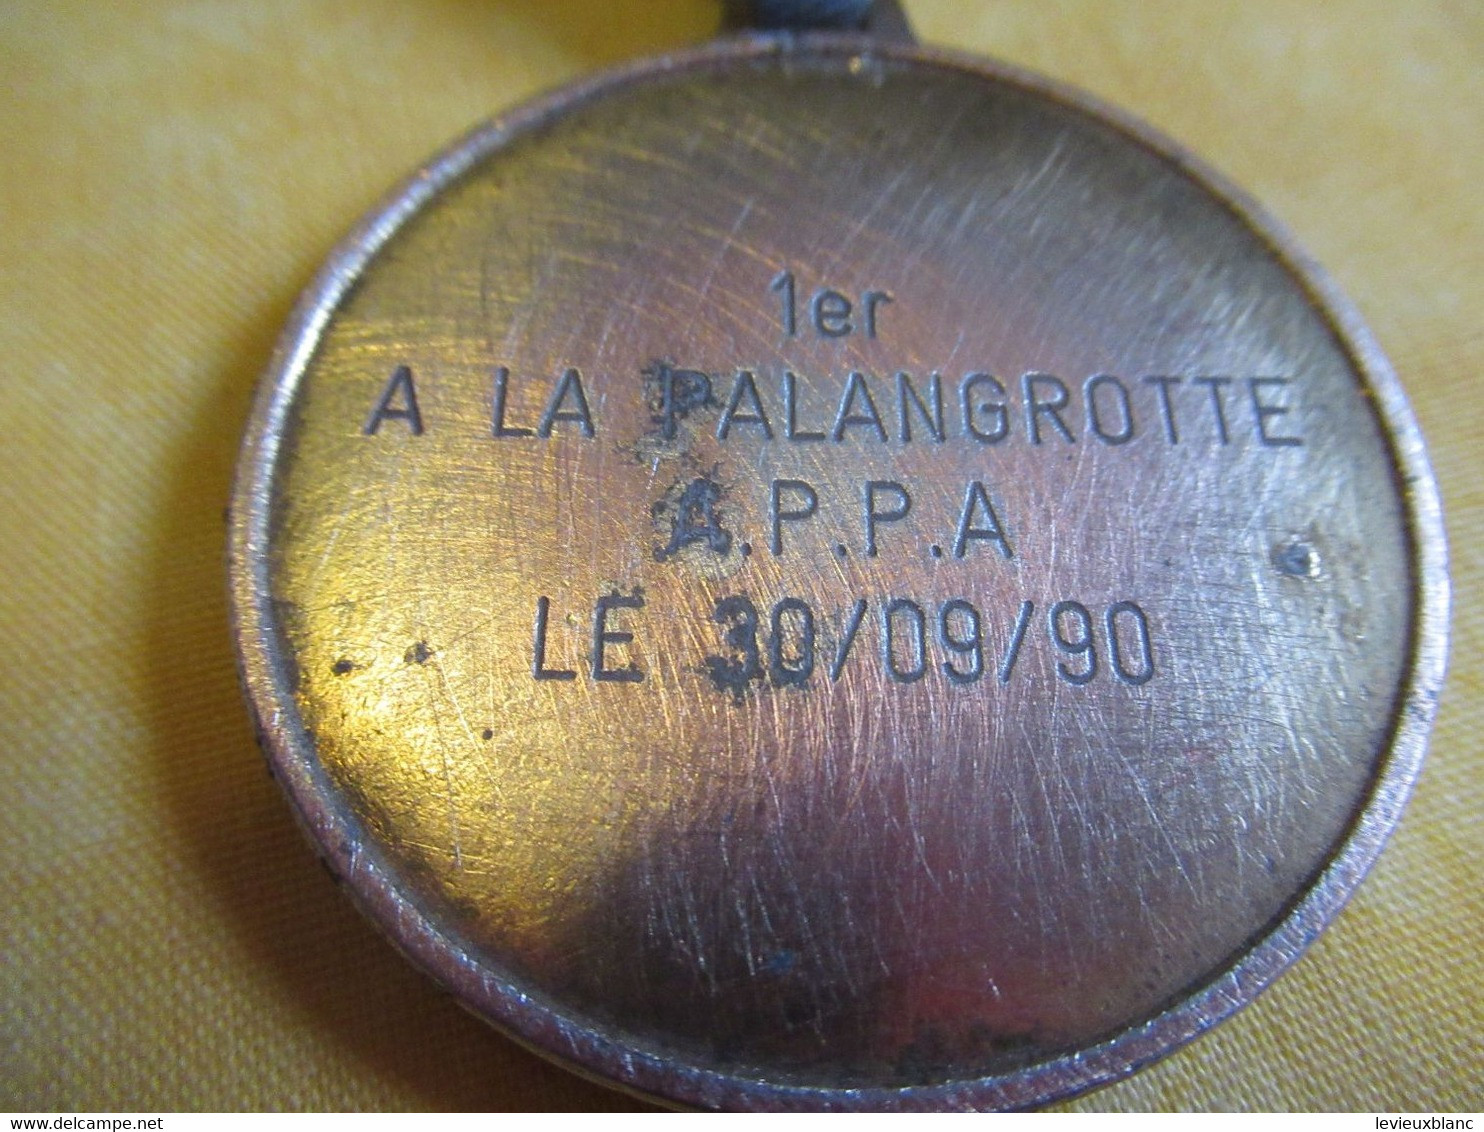 Médaille de Concours de Pêche / 1er à la Palangrotte/A.P.P.A./ANTIBES /1990          CHASS21